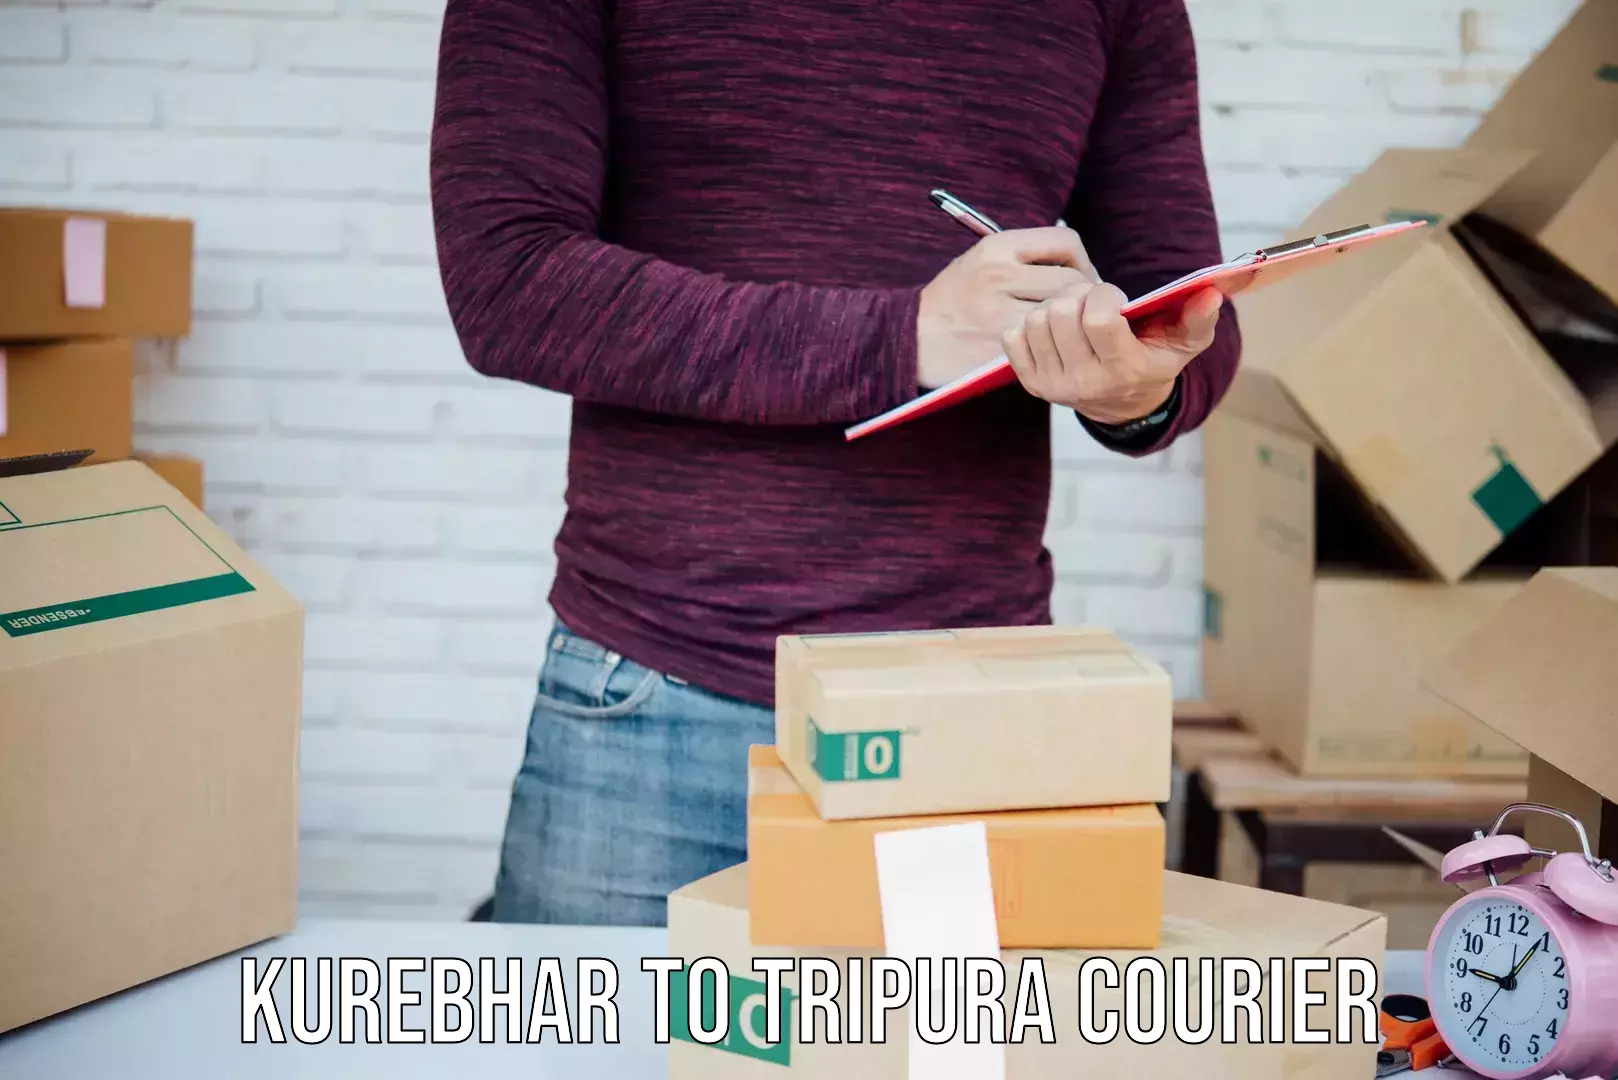 Business shipping needs in Kurebhar to Tripura